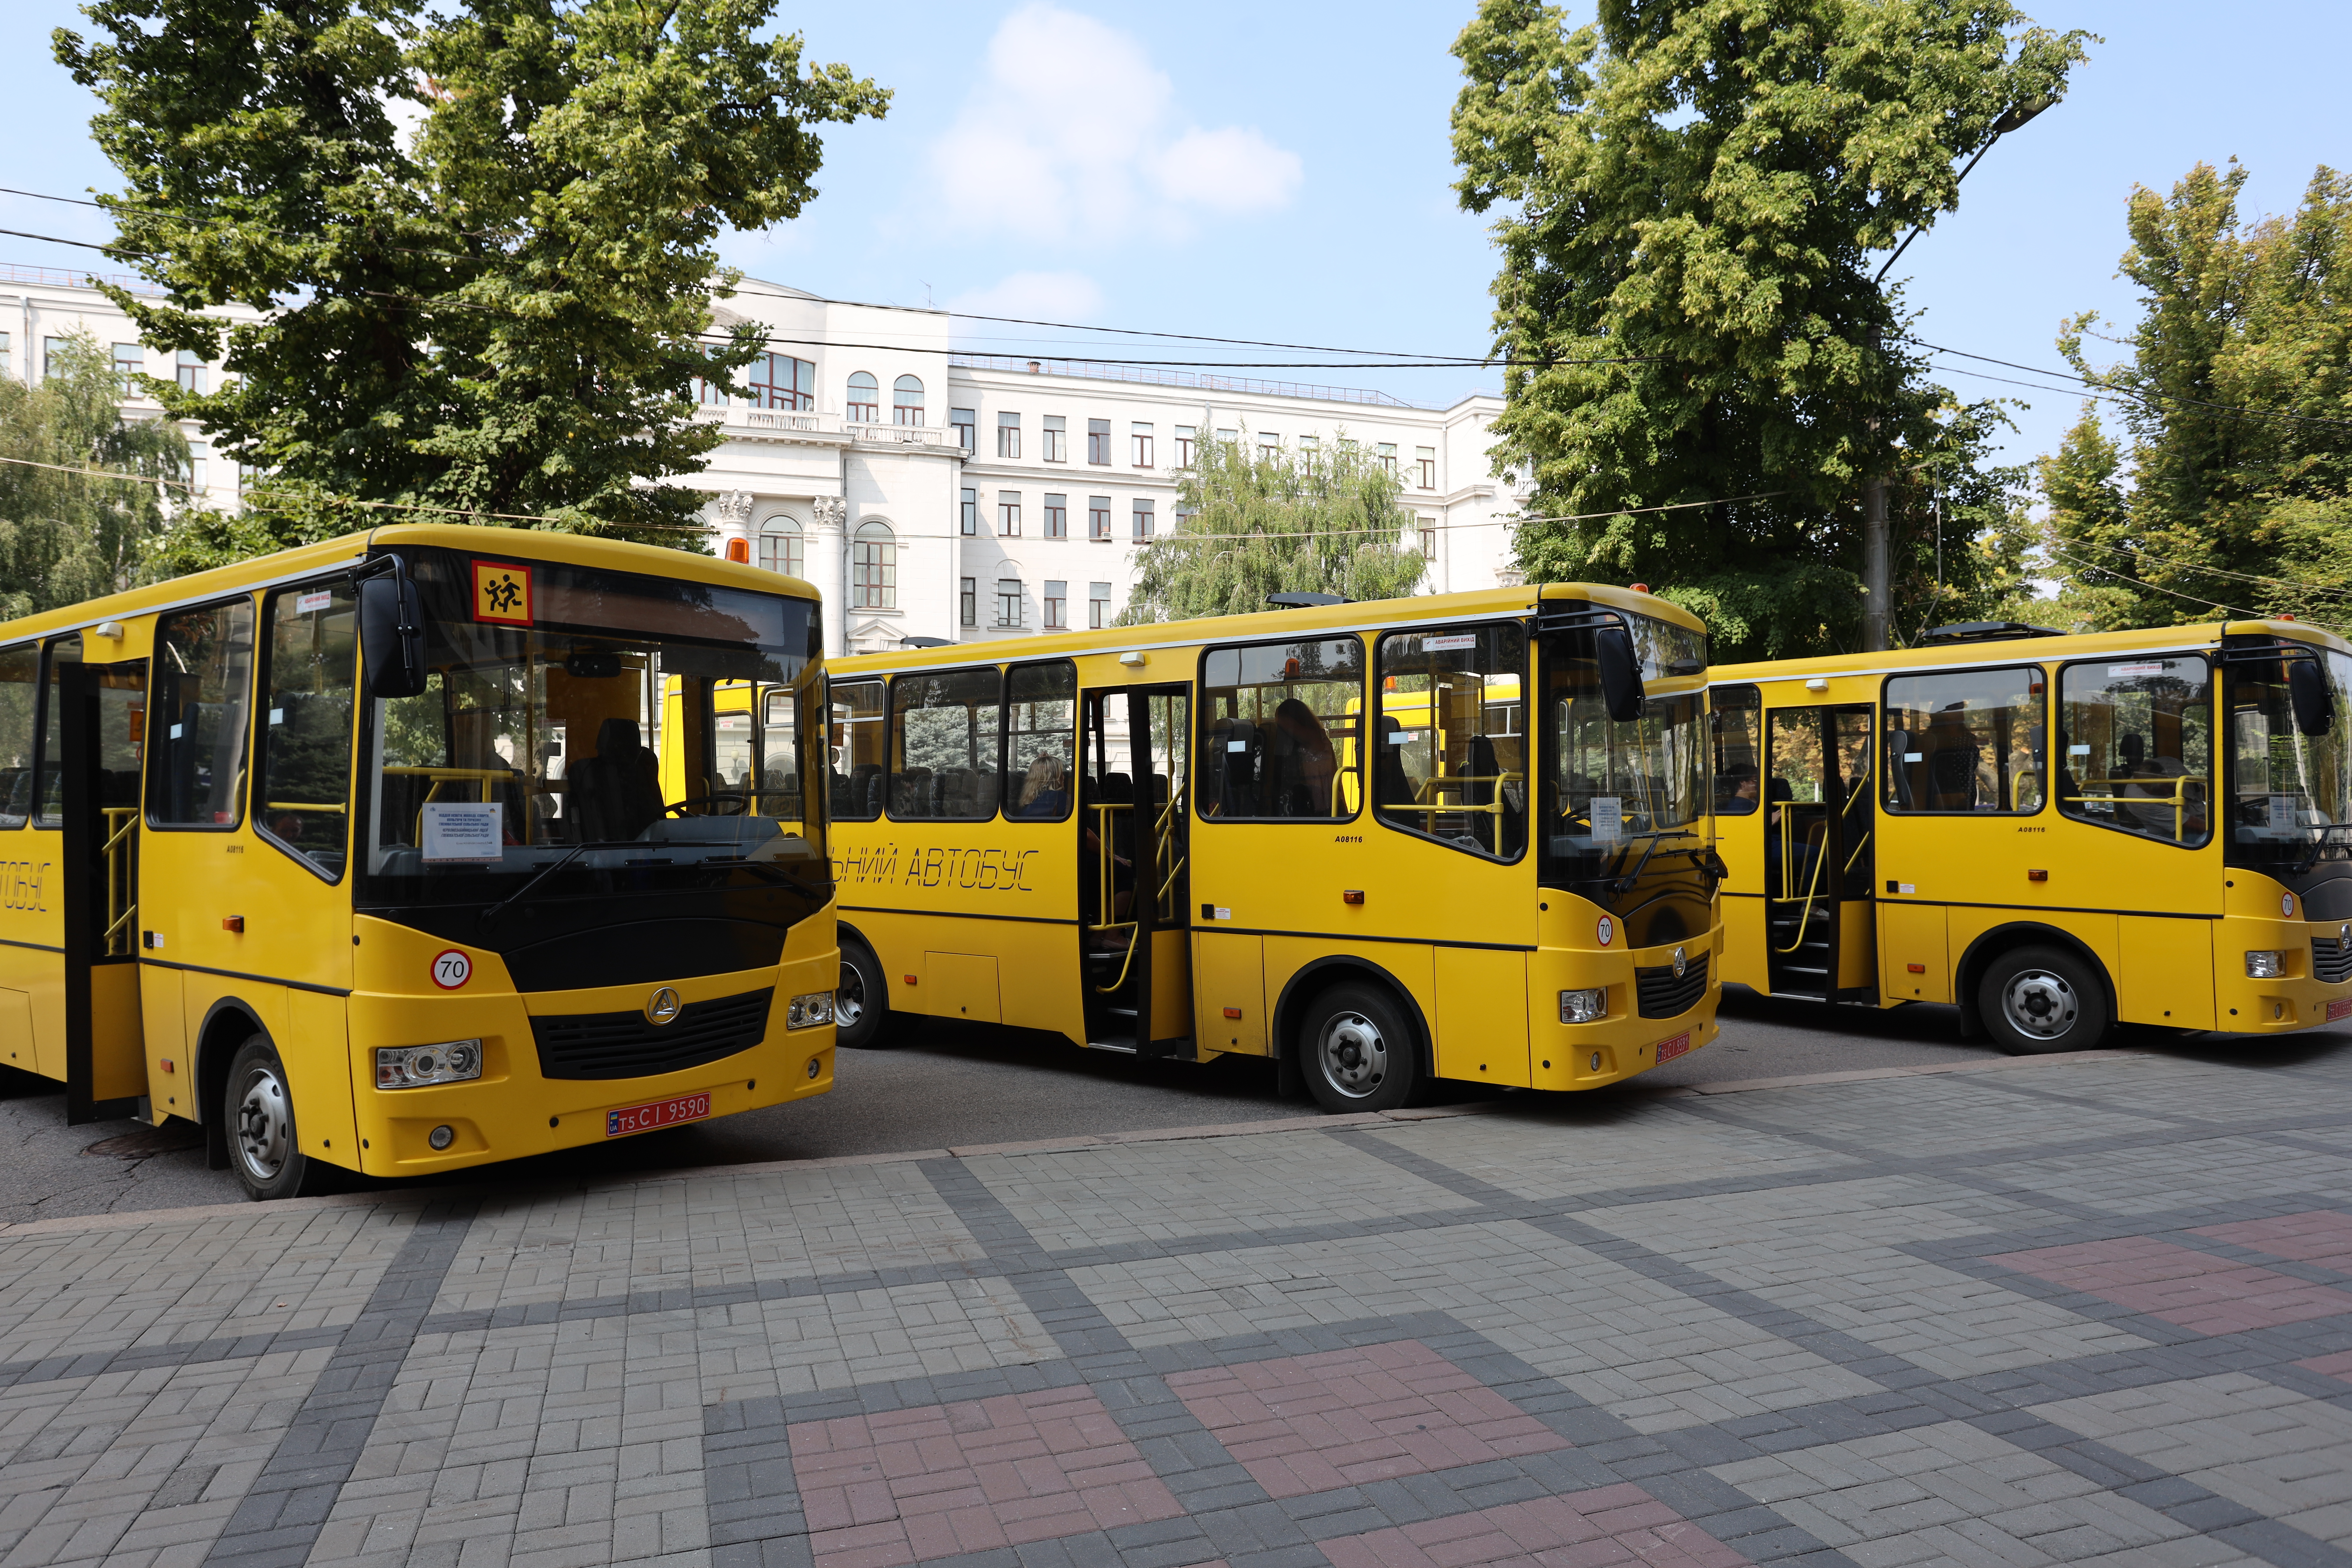 Ще три нові автобуси передали школам Дніпропетровщини